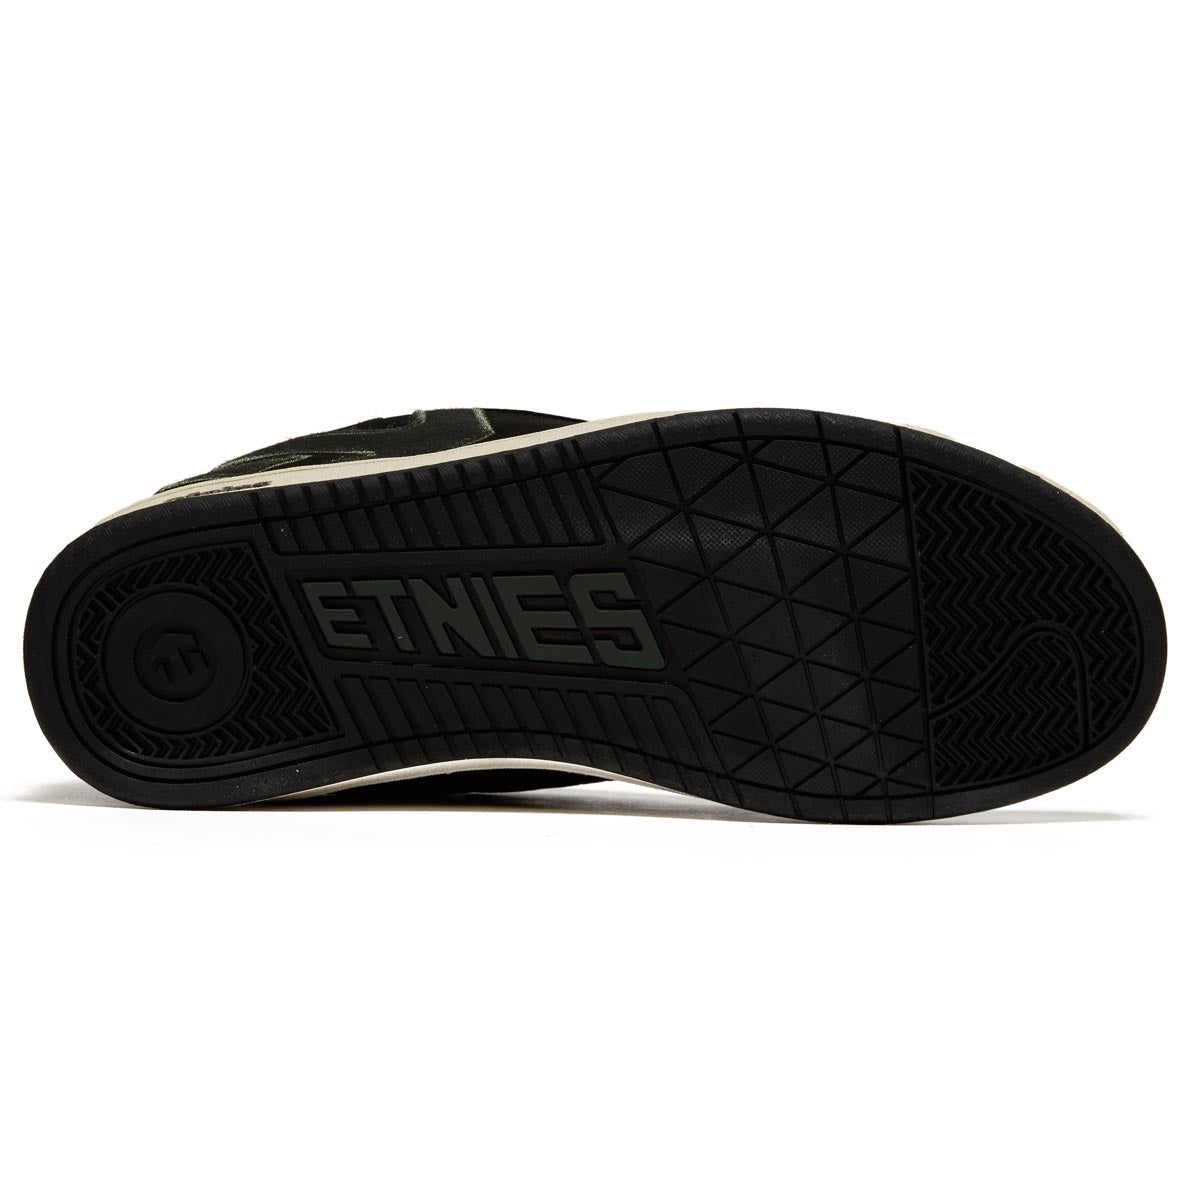 Etnies Fader Shoes - Black/Green image 4